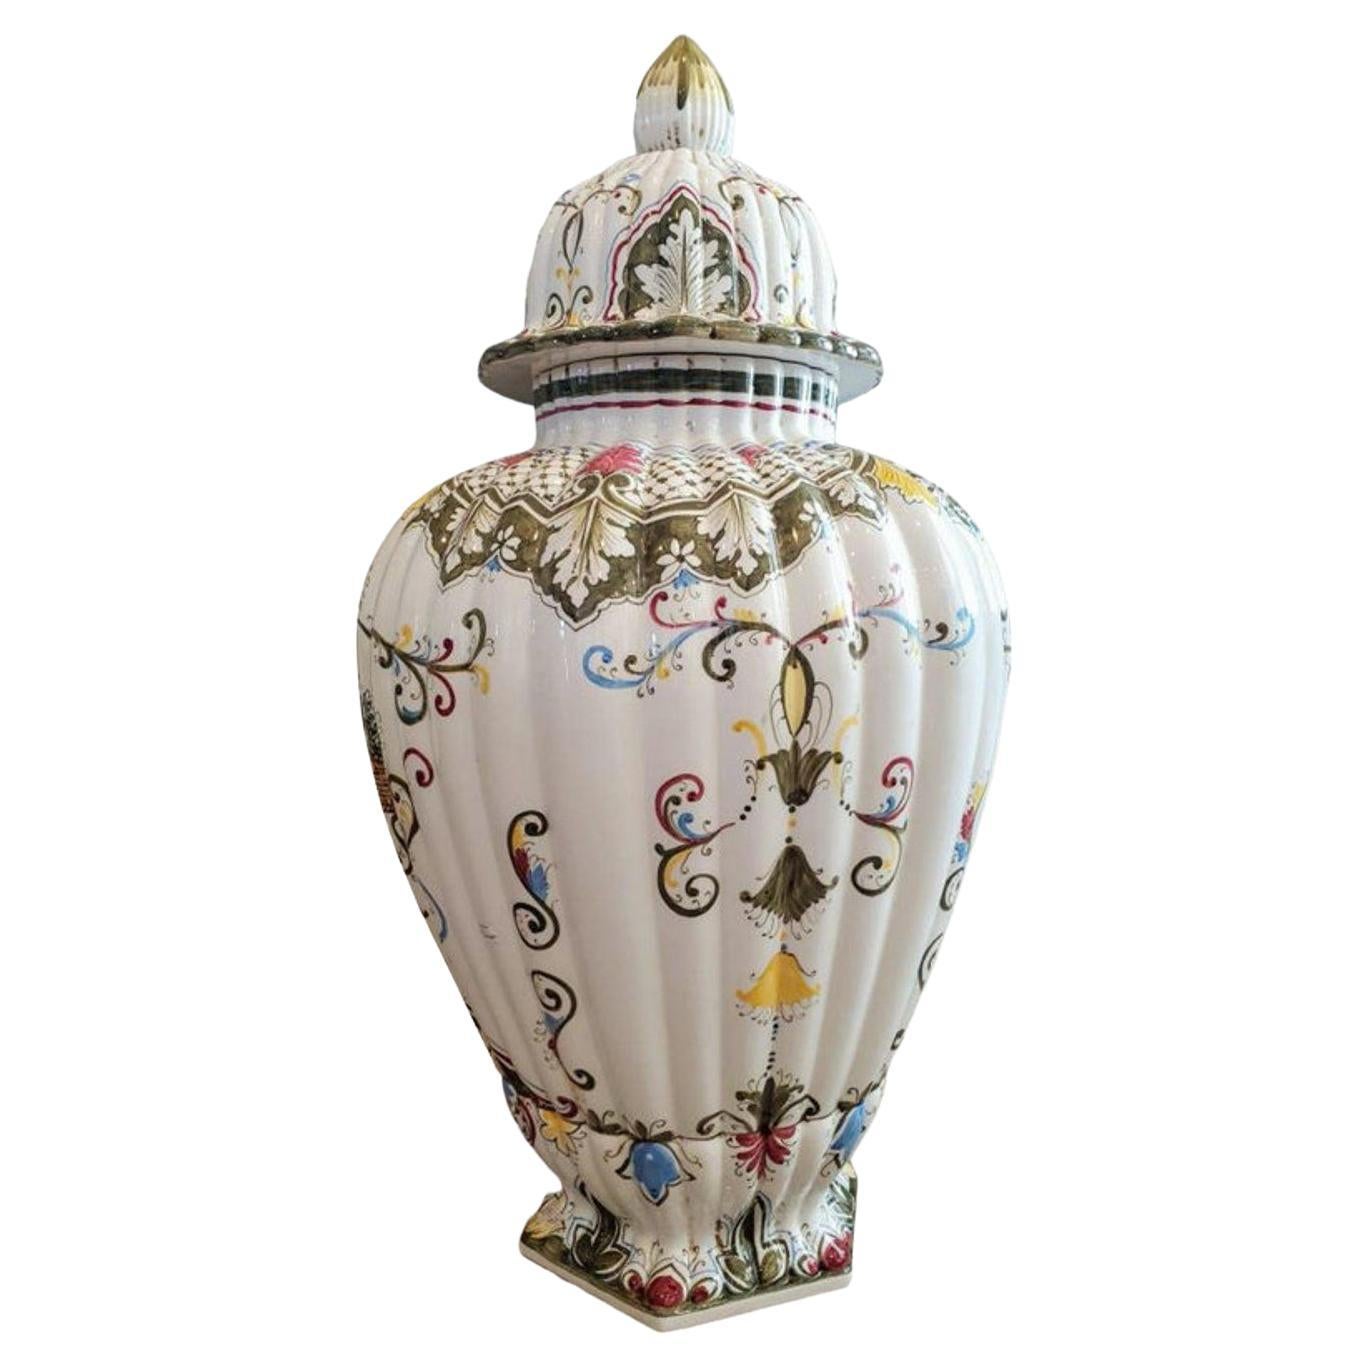 Signed Monumental Italian Porcelain Fiori Urn Floor Vase For Sale